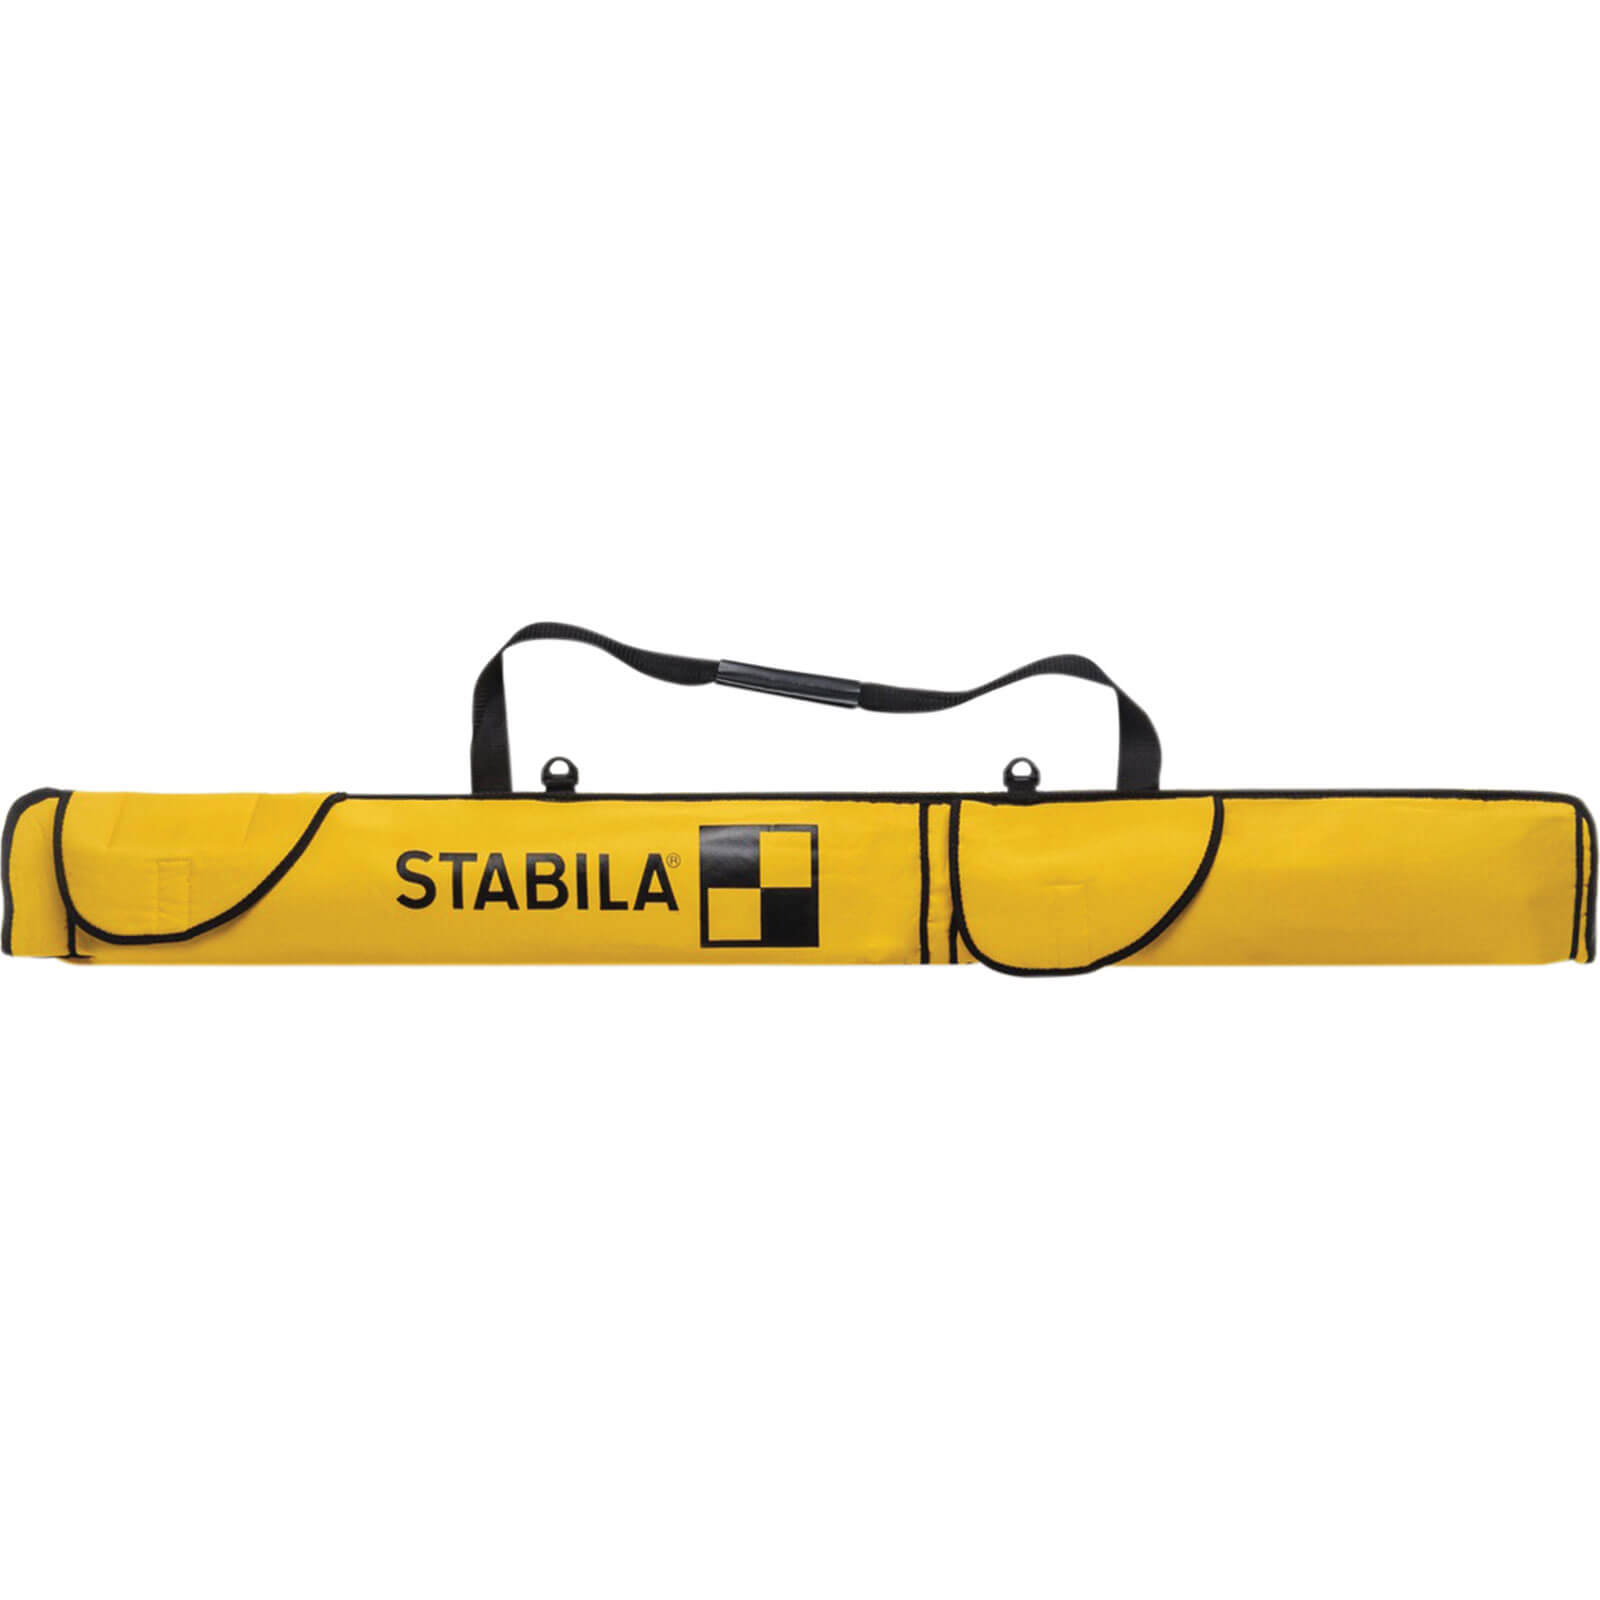 Stabila Combi Spirit Level Bag 48" / 120cm